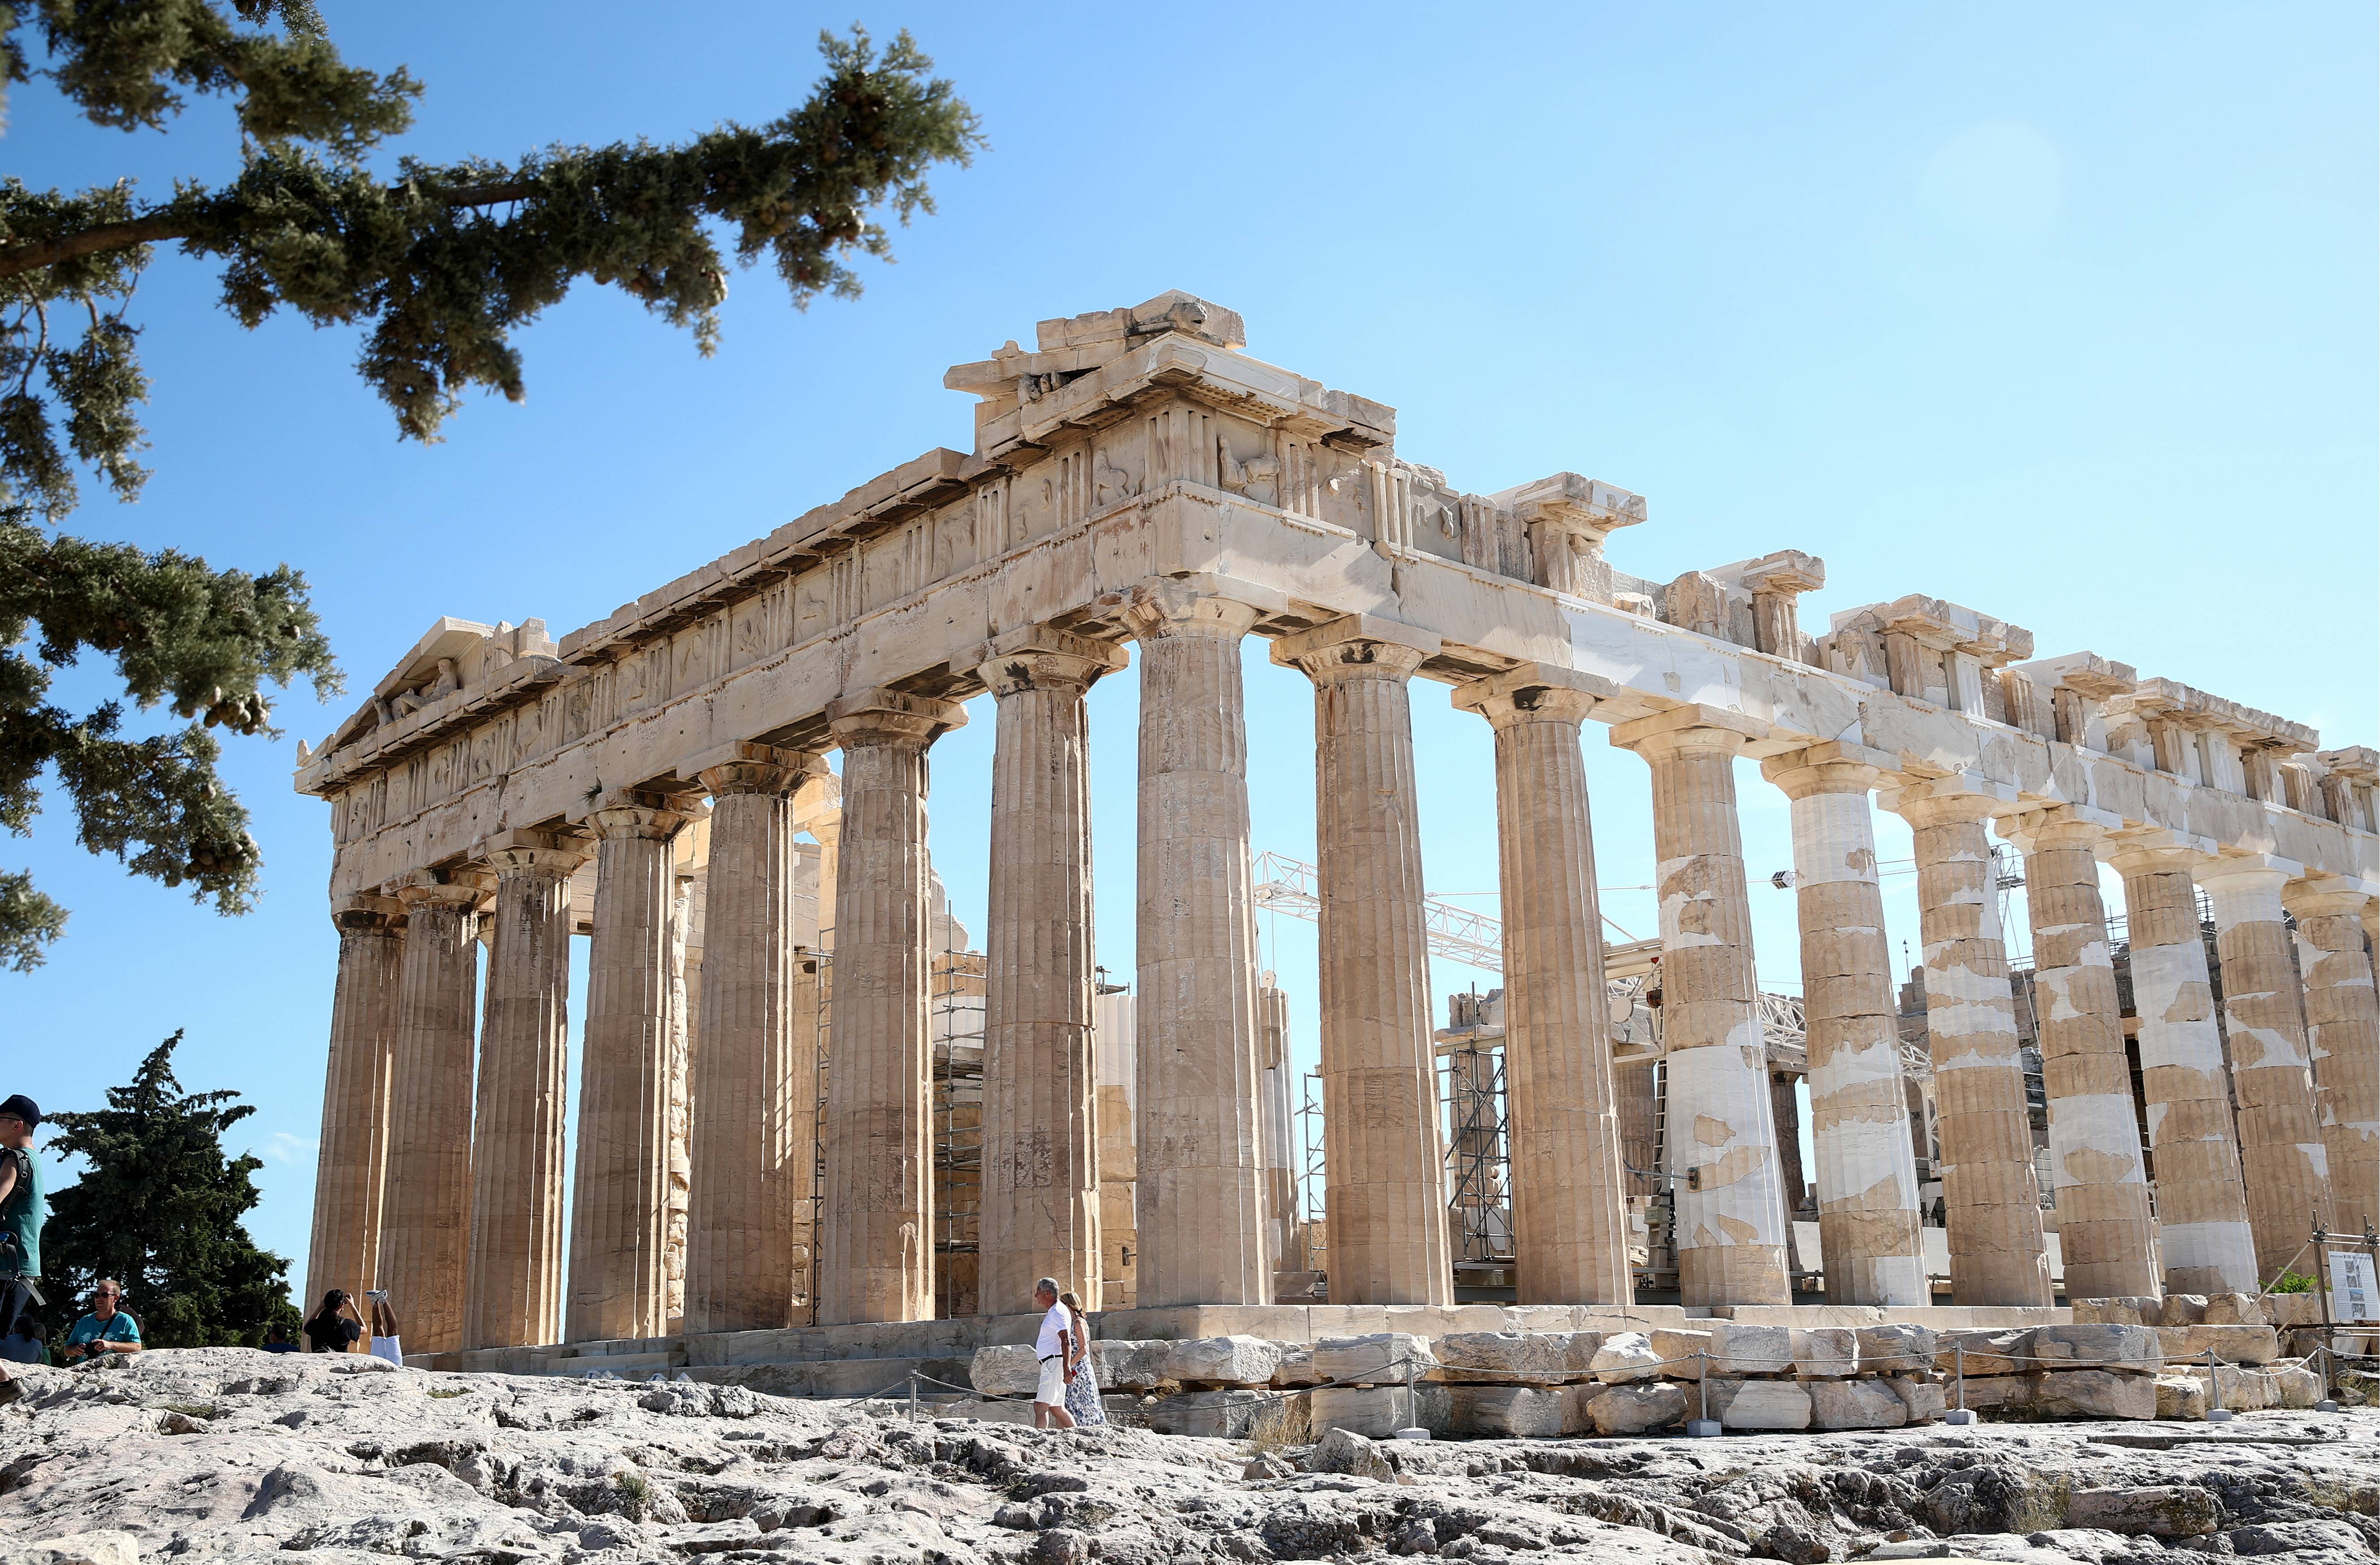 Akropolis von Athen – Guide, Eintrittspreis, Tickets, Öffnungszeiten